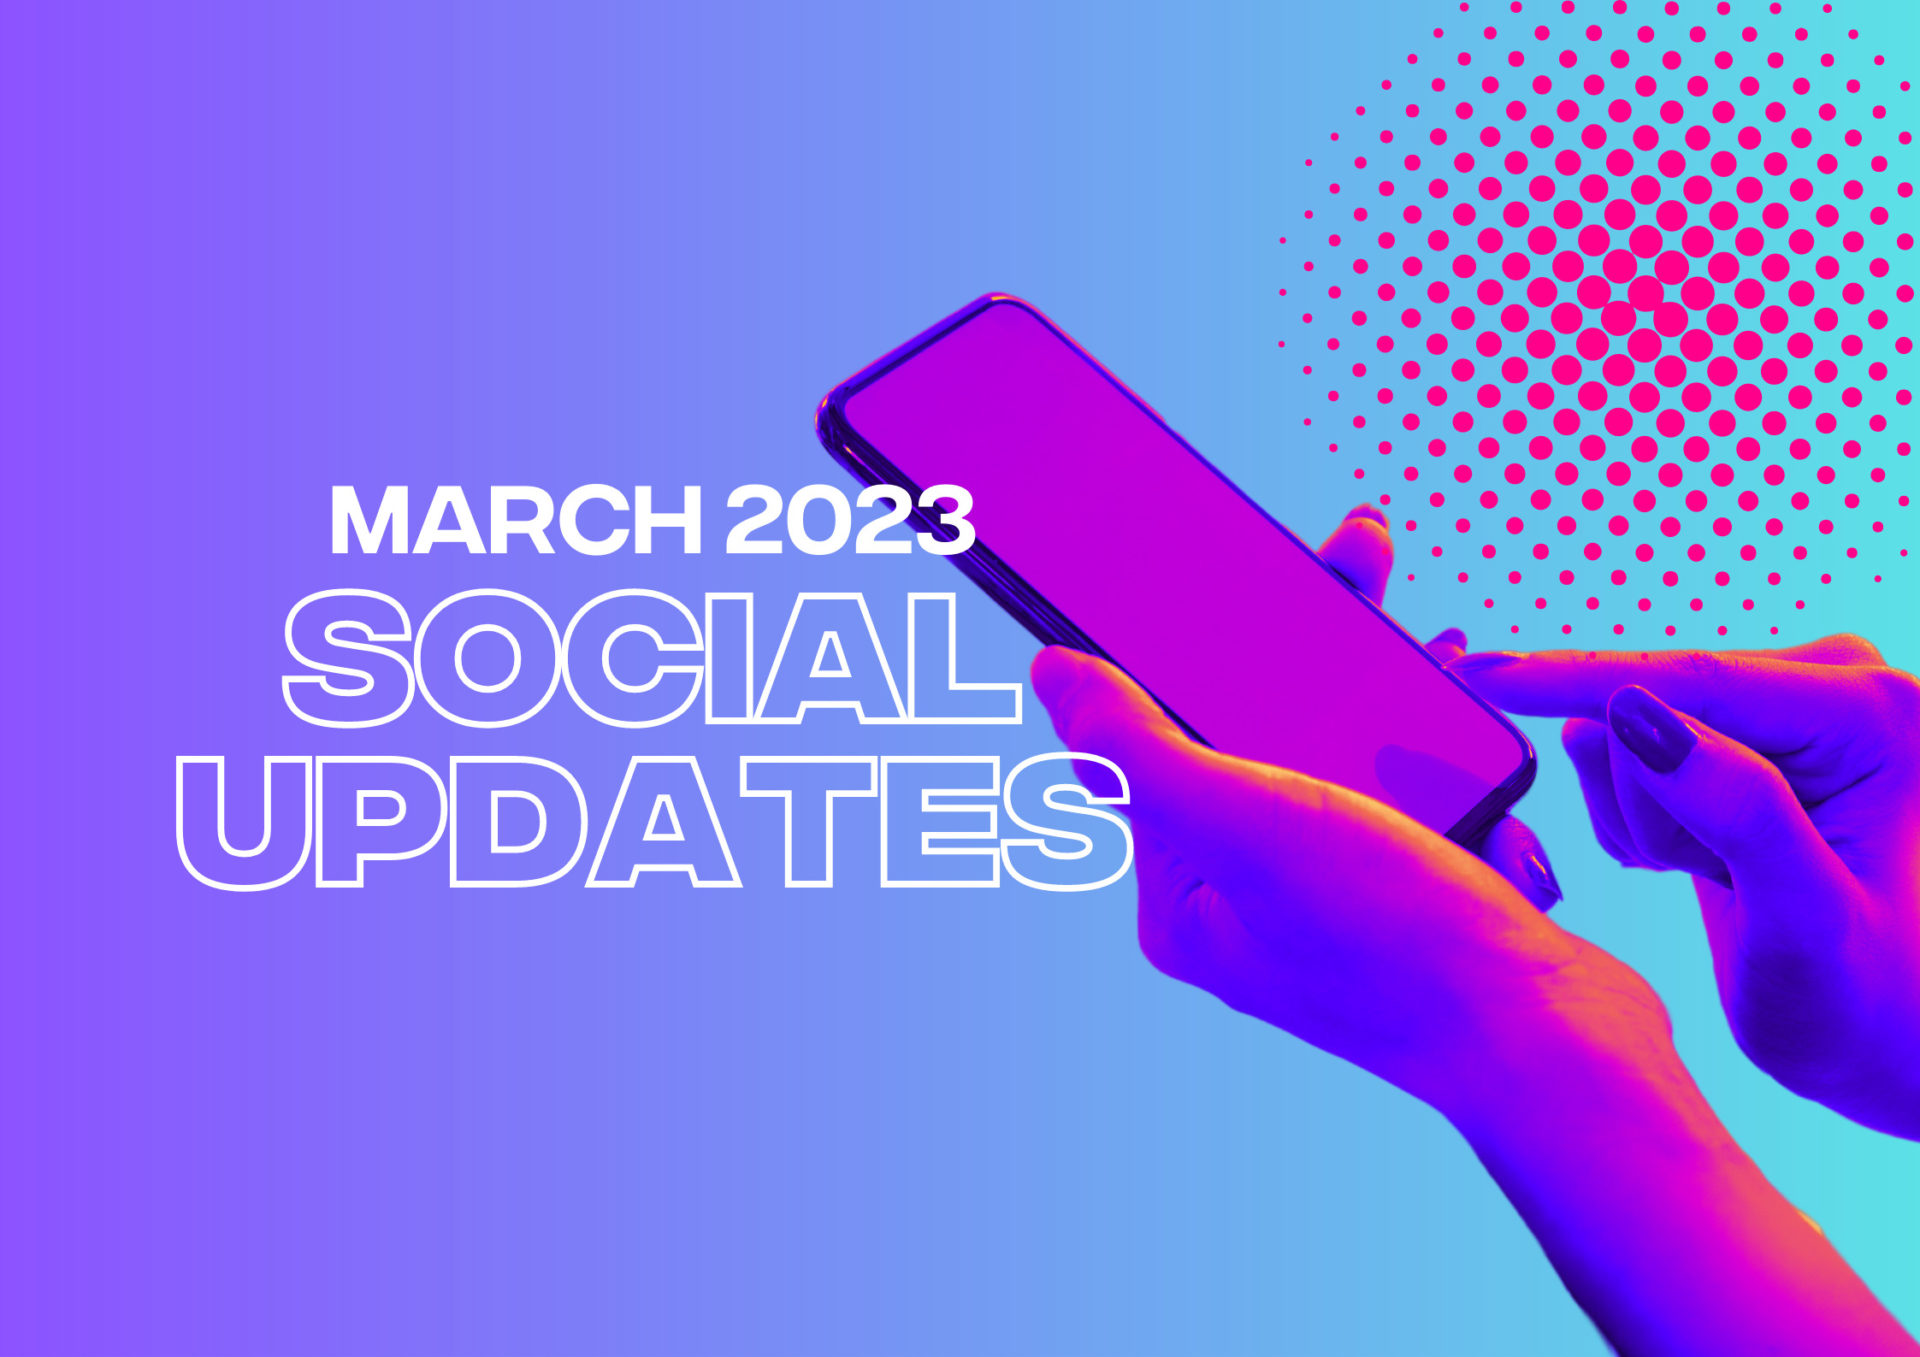 Social Media Updates: March 2023